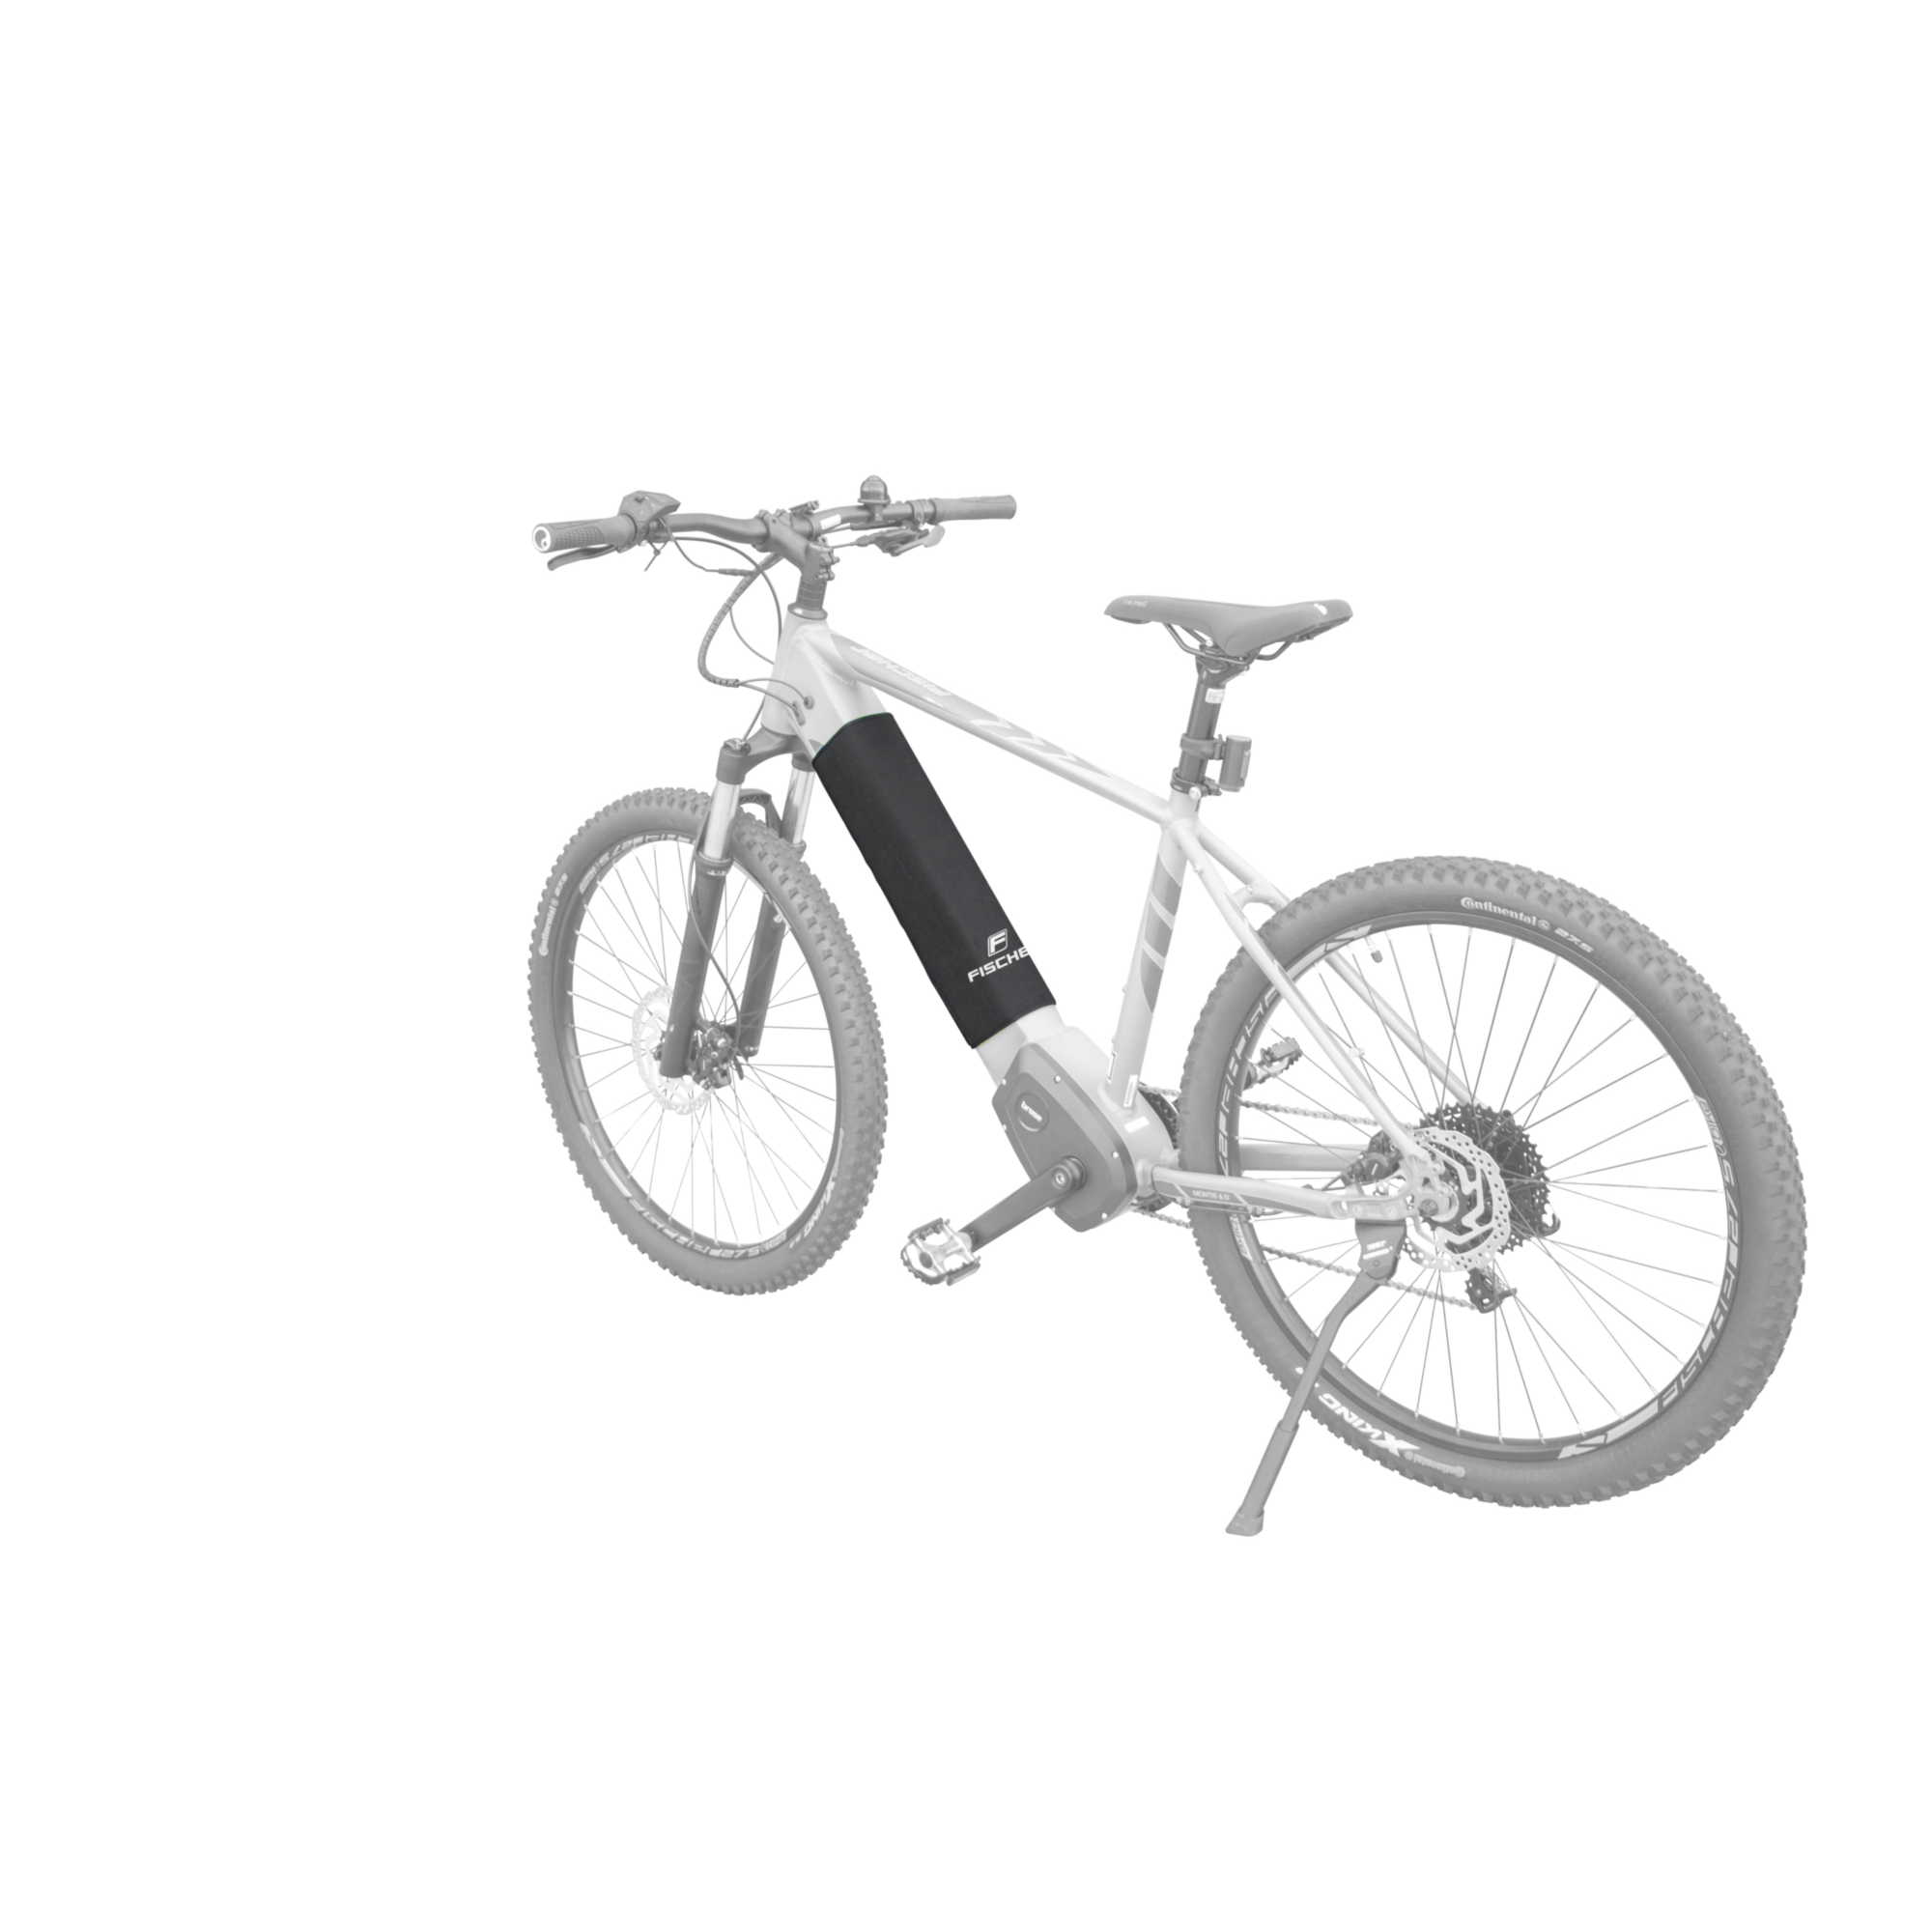 Schutzhülle für integrierten Akku E-Bike schwarz + product picture